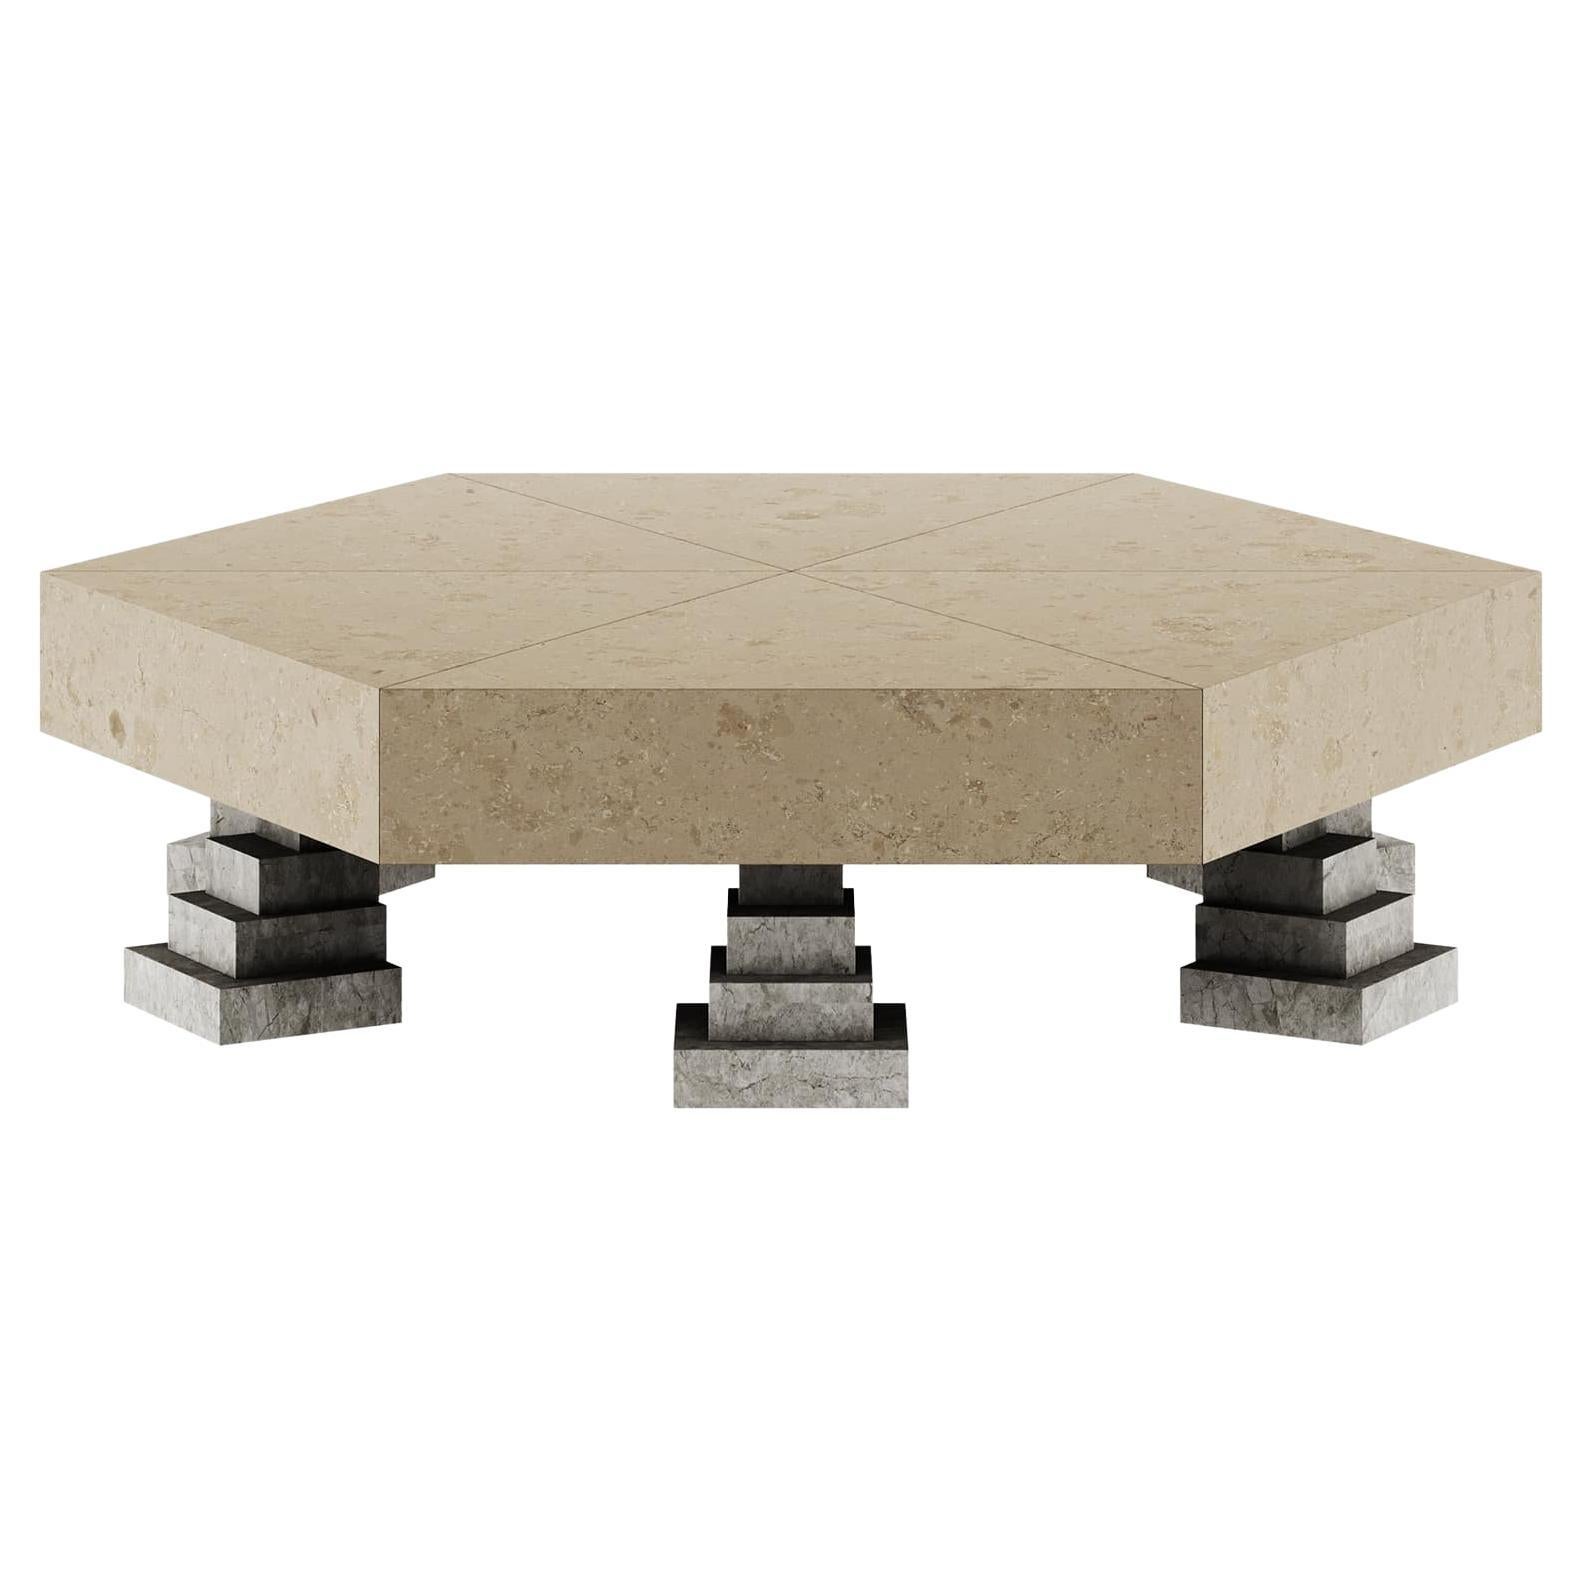 Table centrale géométrique contemporaine en pierre calcaire beige naturelle Grigio Tundra